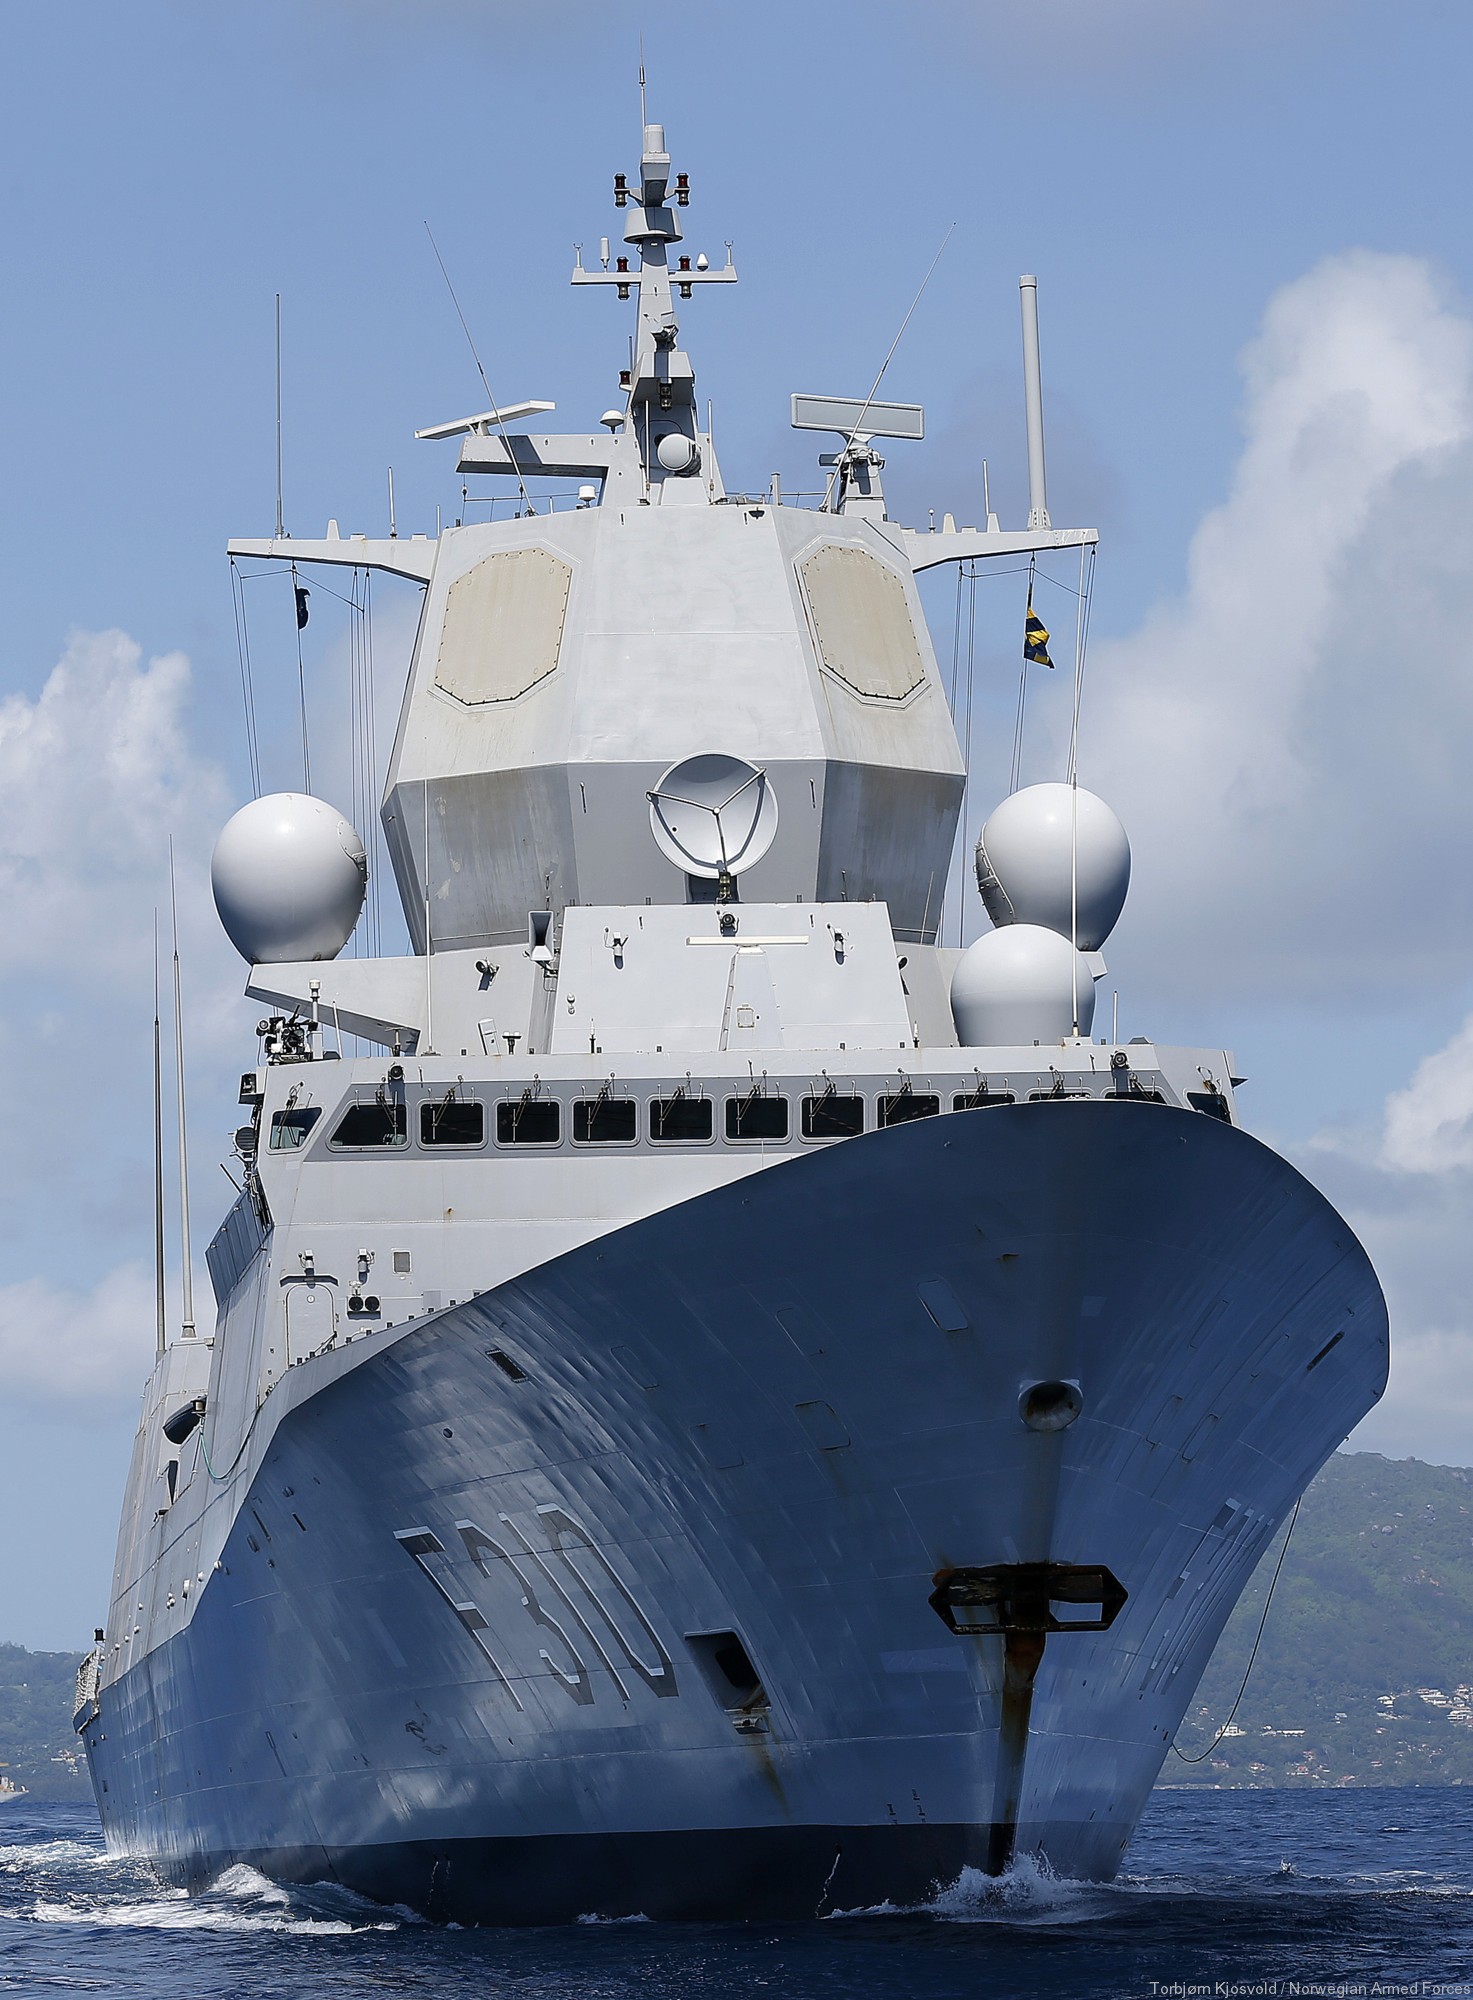 f-310 fridtjof nansen hnoms knm frigate royal norwegian navy sjoforsvaret 31 an/spy-1f radar aegis